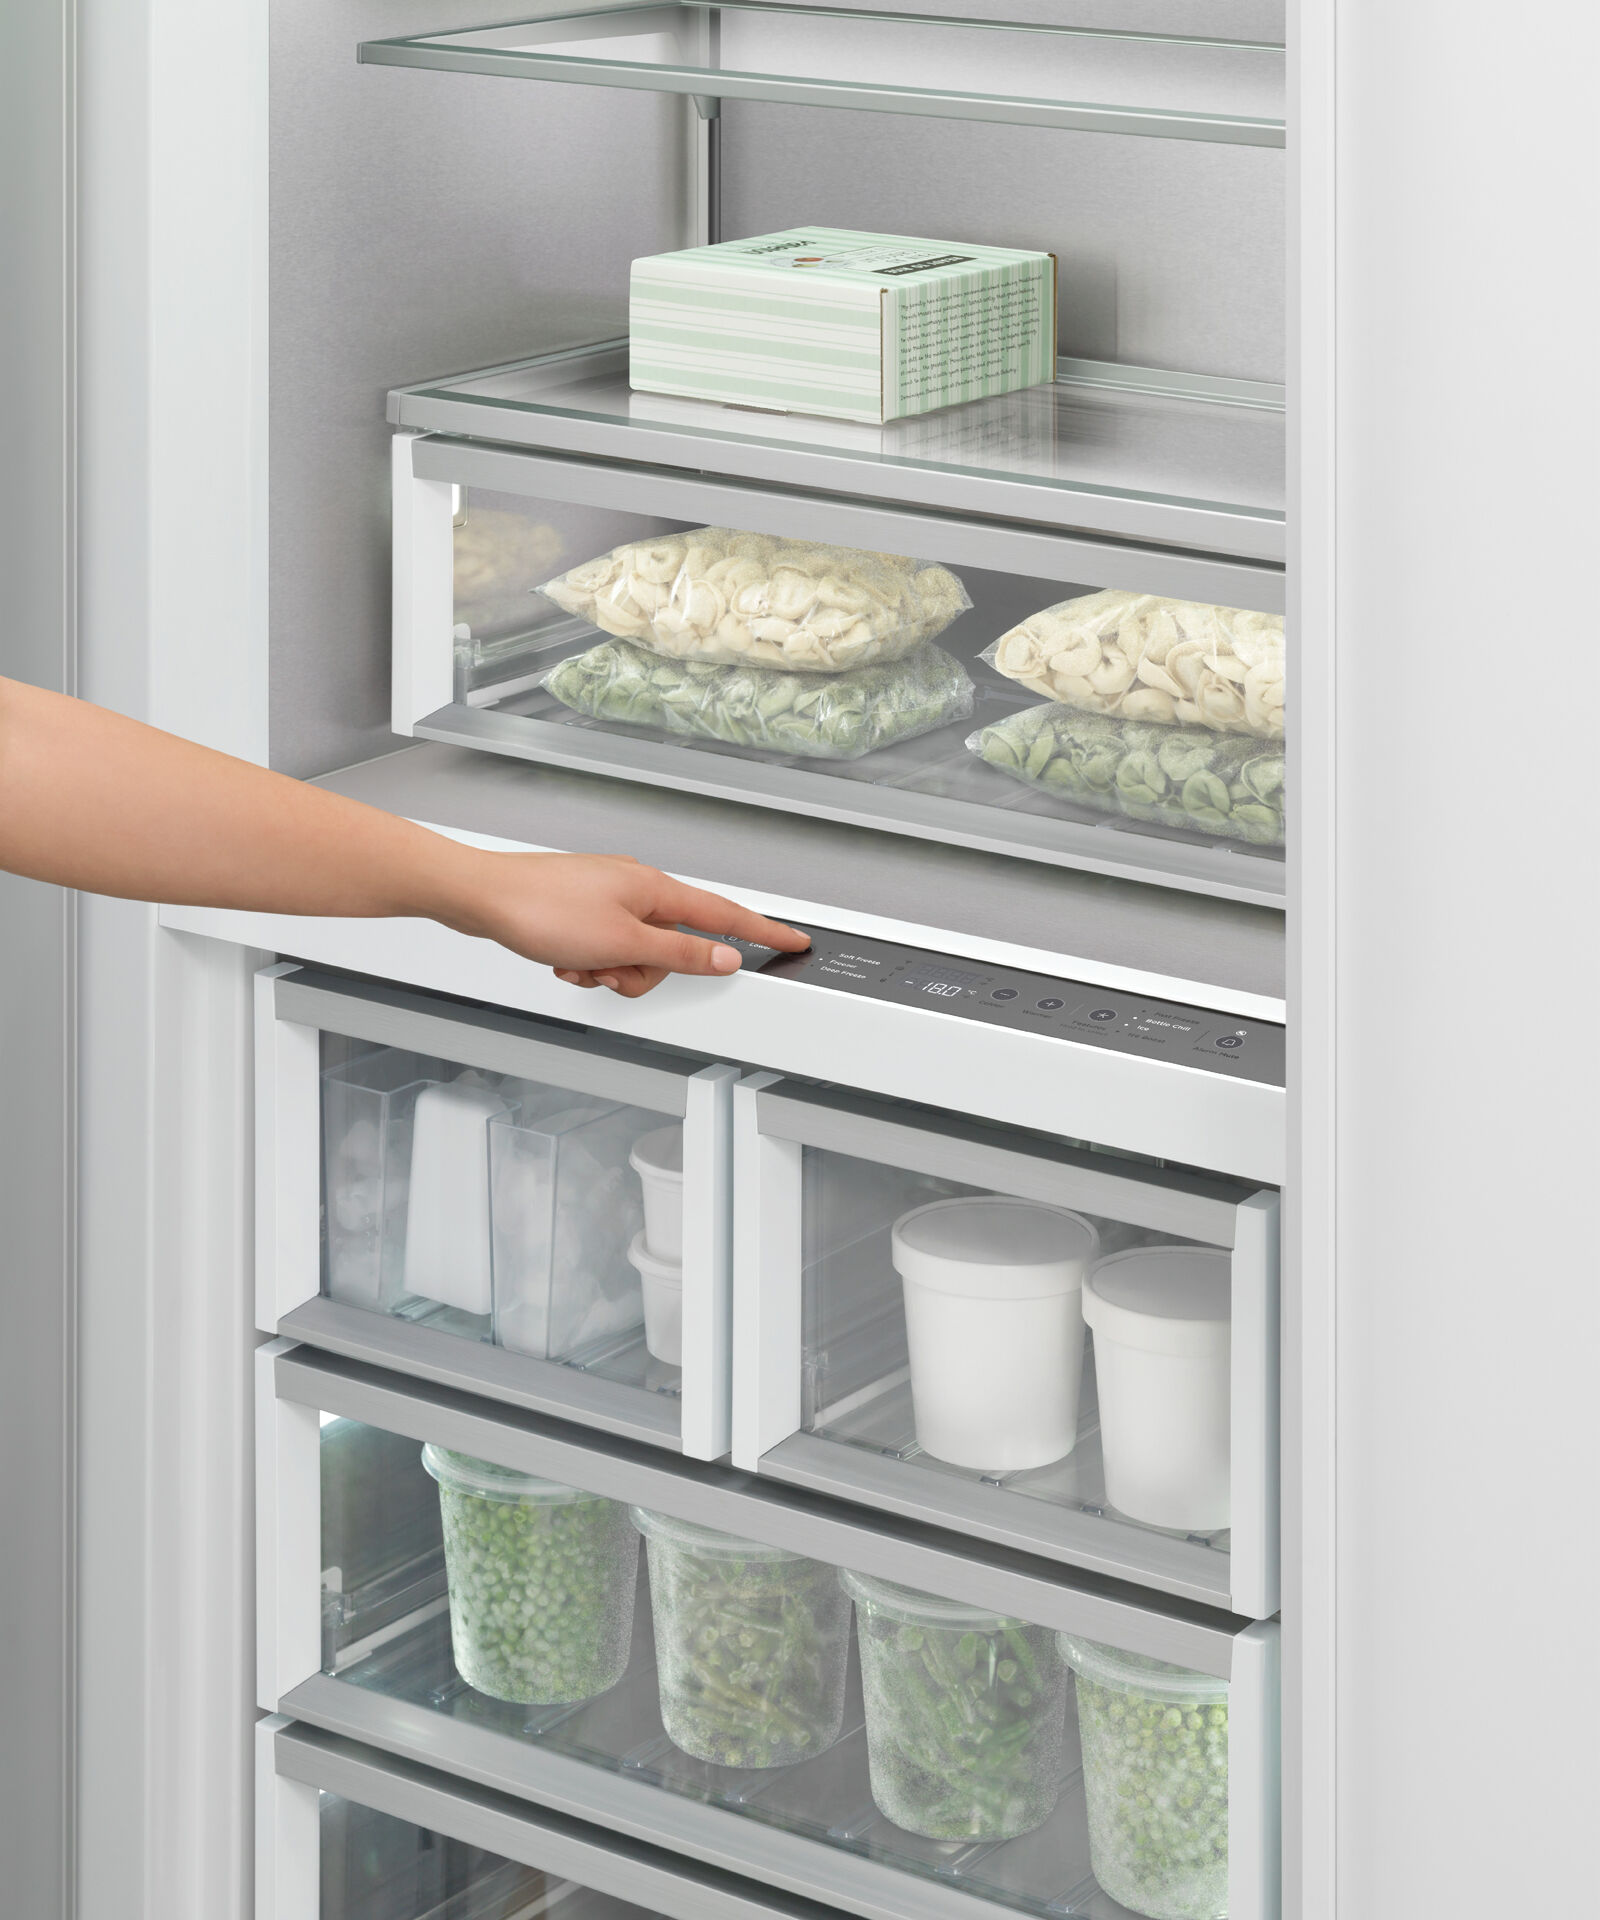 嵌入式立式冷凍櫃, 76cm, 自動製冰 gallery image 10.0